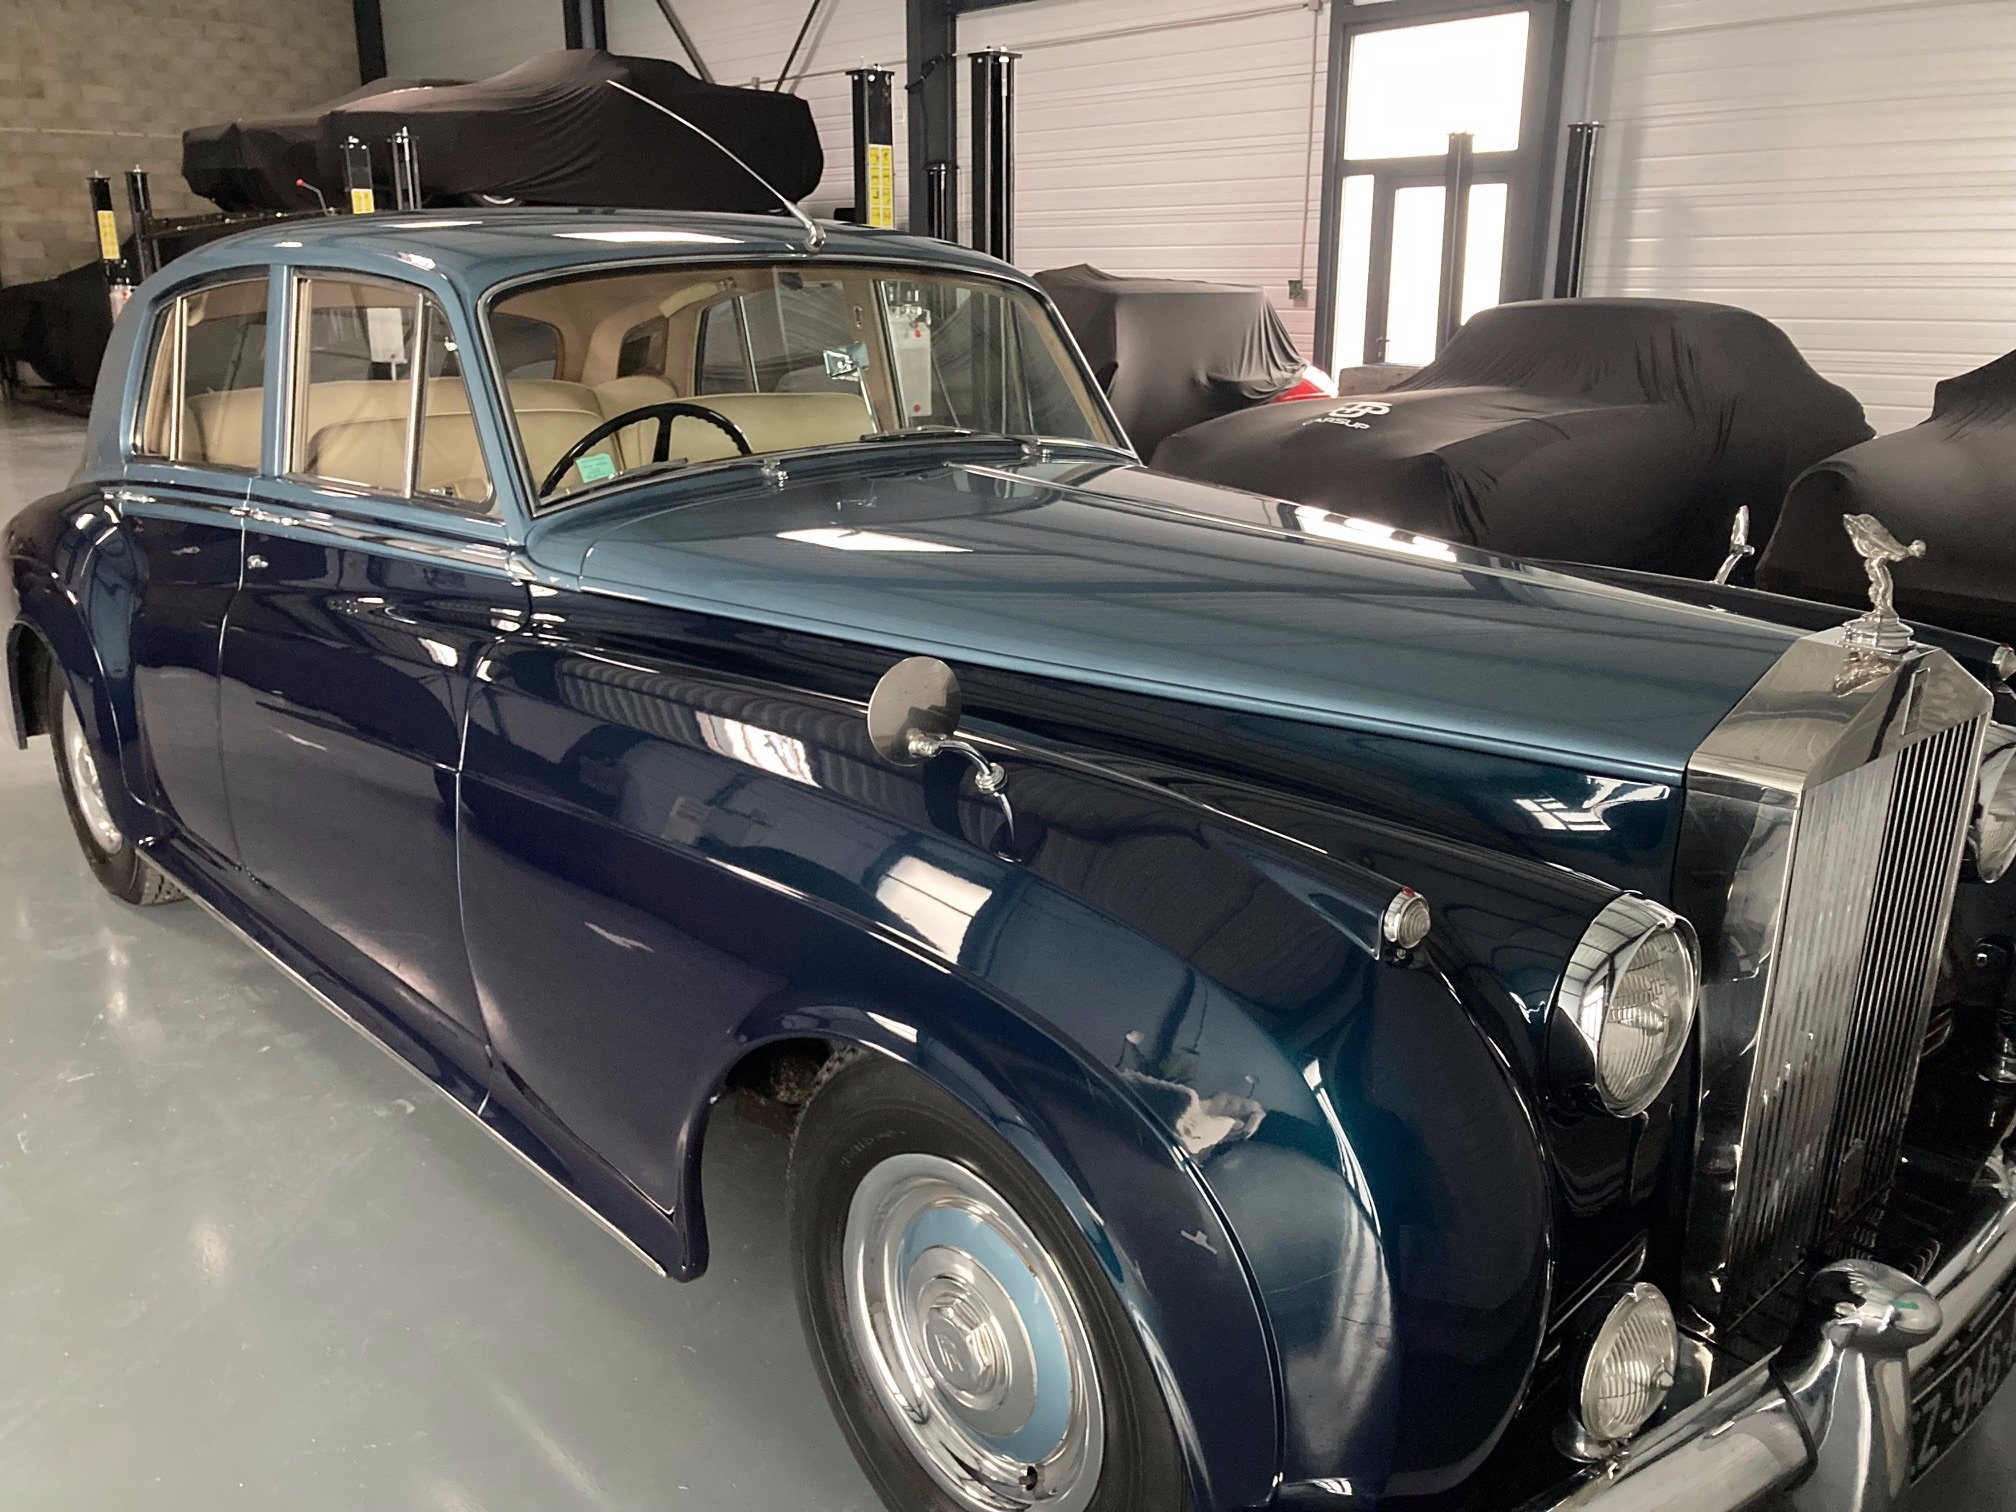 Cette Rolls Royce des années 60 a été confiée par son propriétaire à Carsup, une conciergerie dédiée à l'automobile de collection qui assure le remisage, l'entretien et toute une gamme d'autres services. LP/Christine Berkovicius